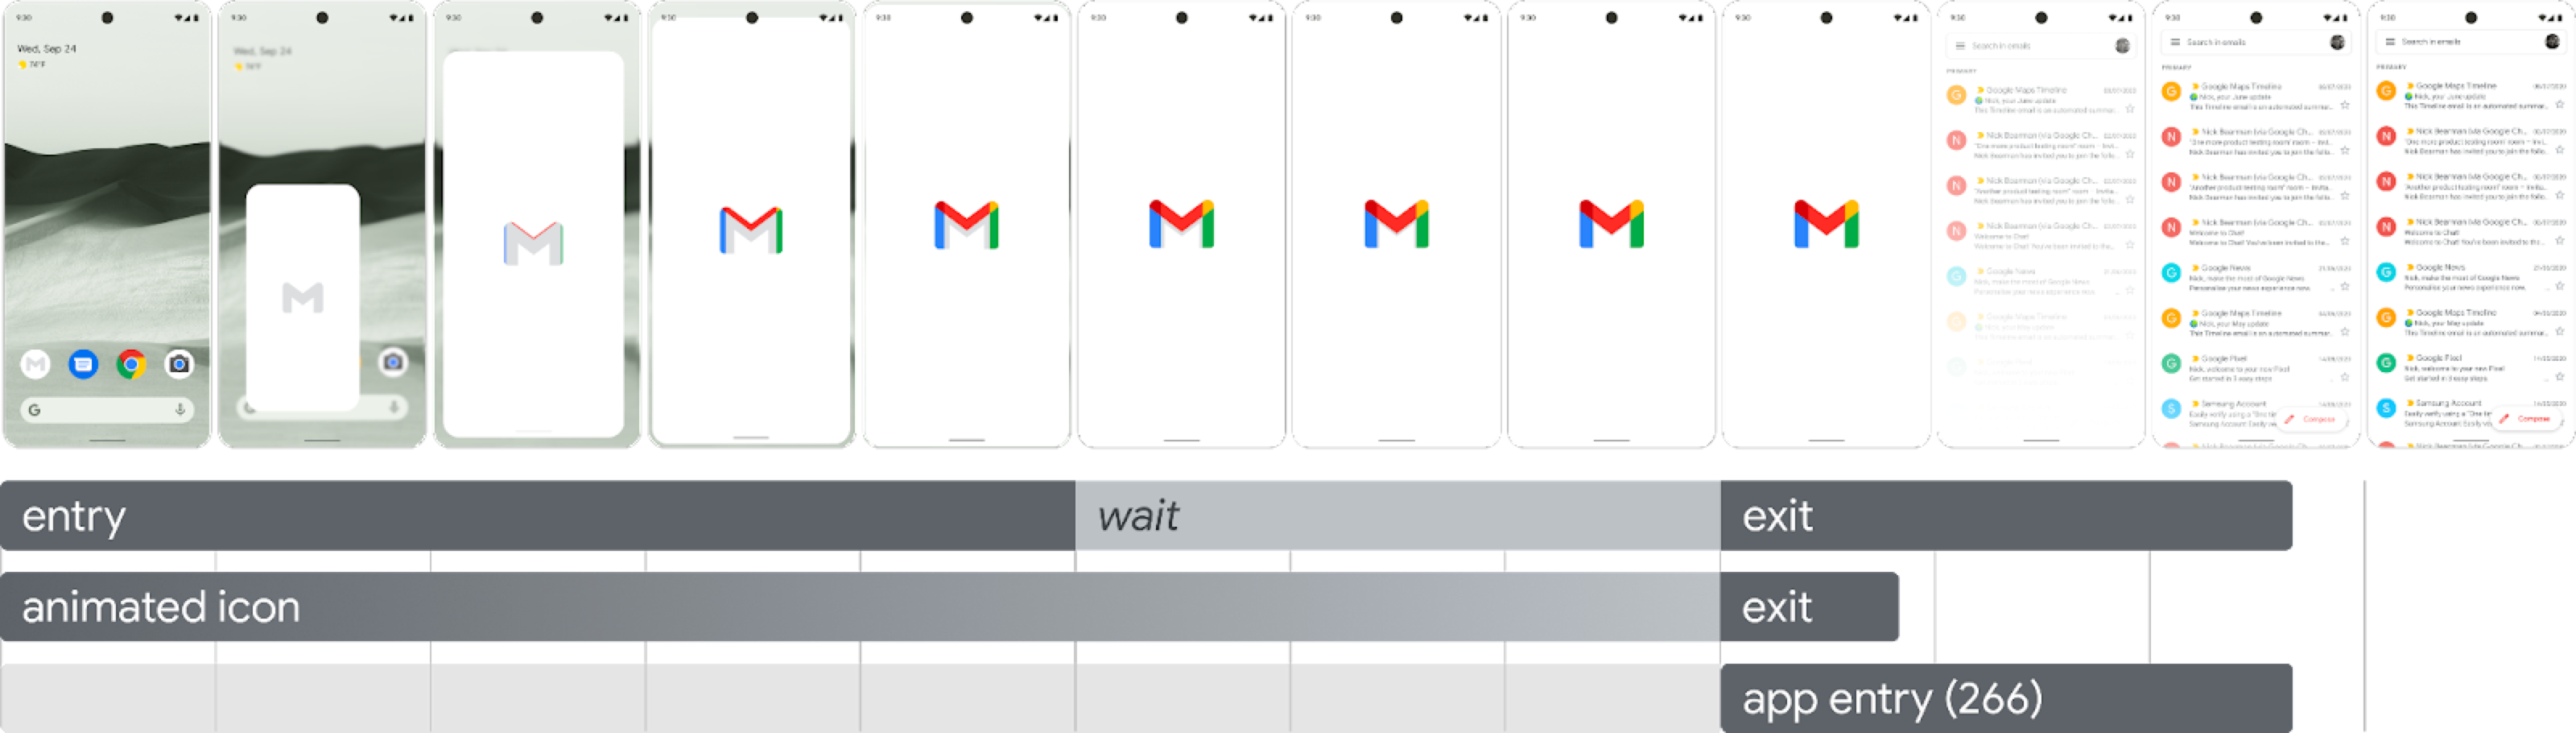 Uma imagem mostrando a sequência de inicialização em doze frames consecutivos, começando com o toque no ícone na tela de início e preenchendo a tela à medida que ela aumenta